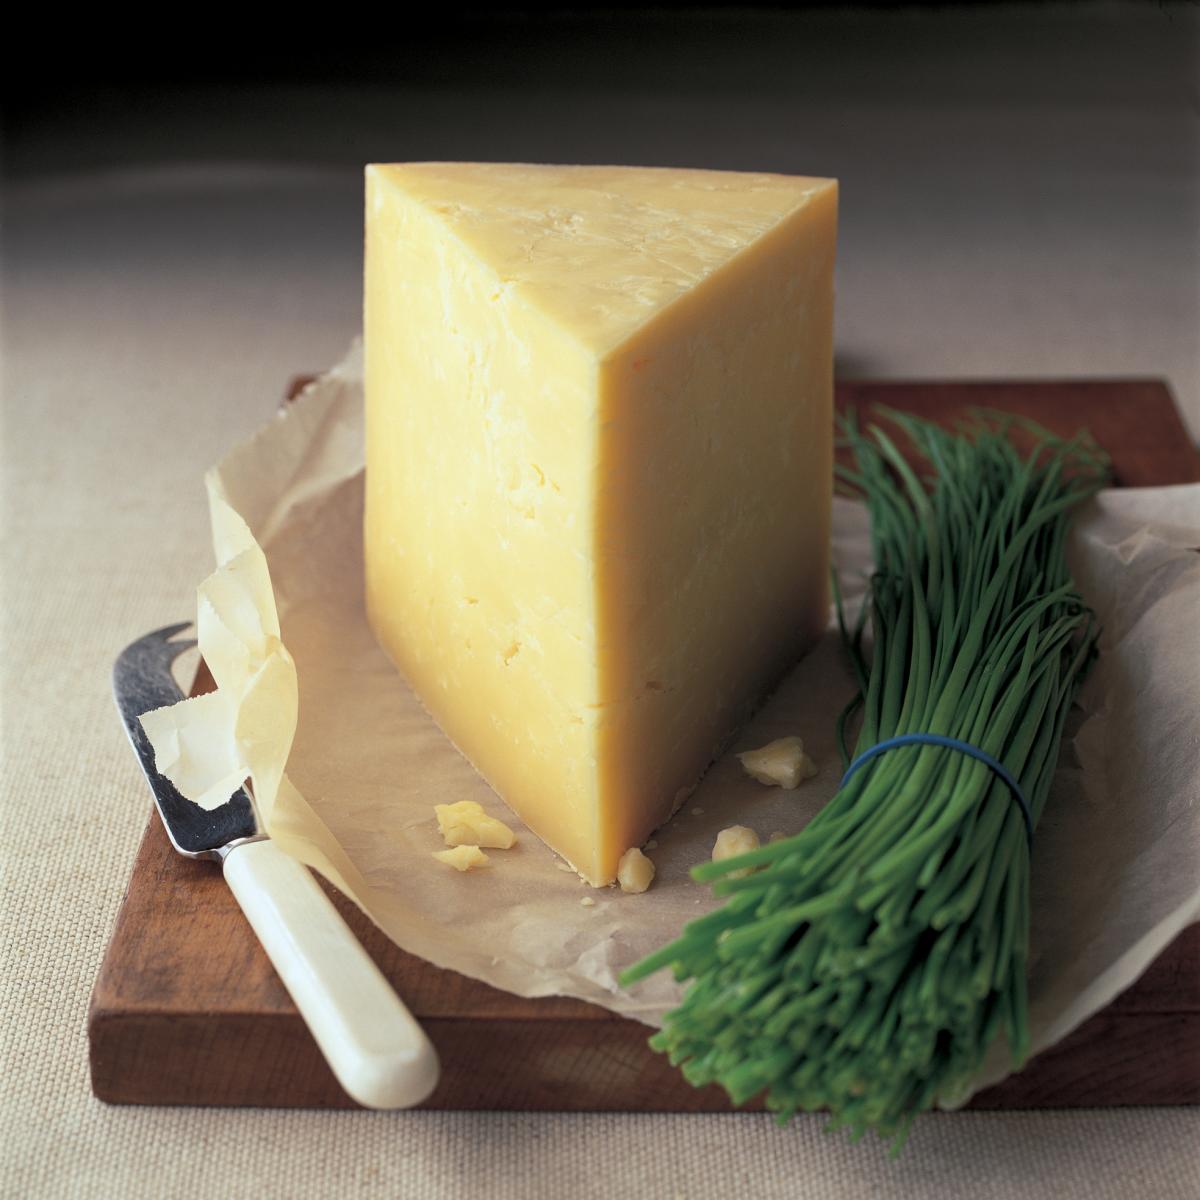 奶酪食谱的图片金沙城彩票